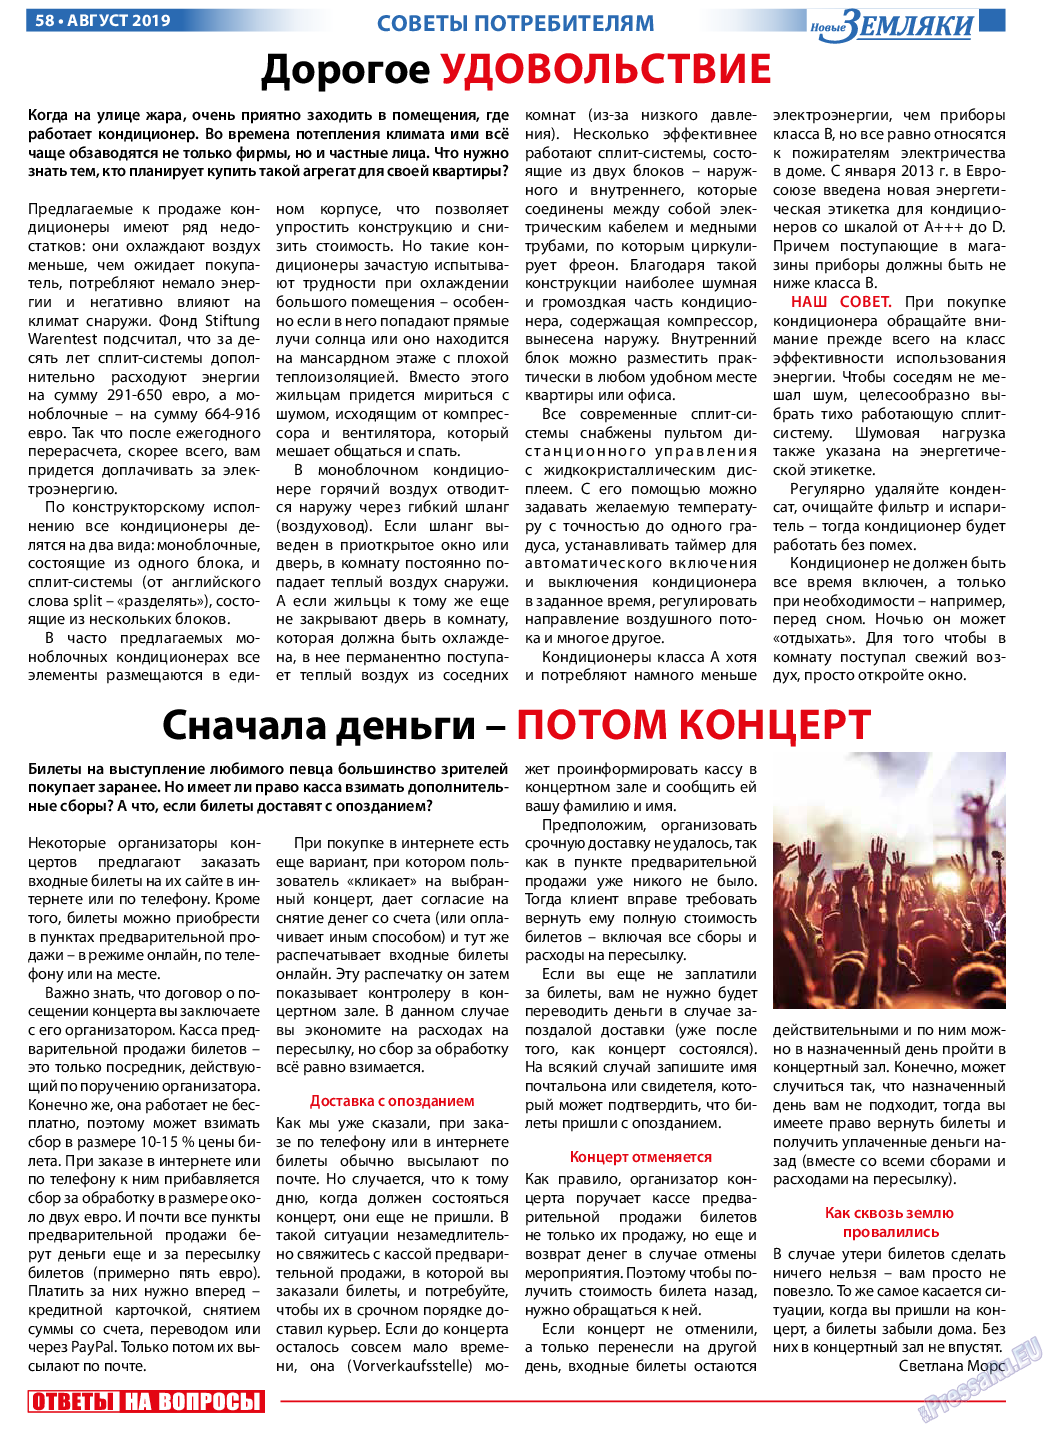 Новые Земляки (газета). 2019 год, номер 8, стр. 58